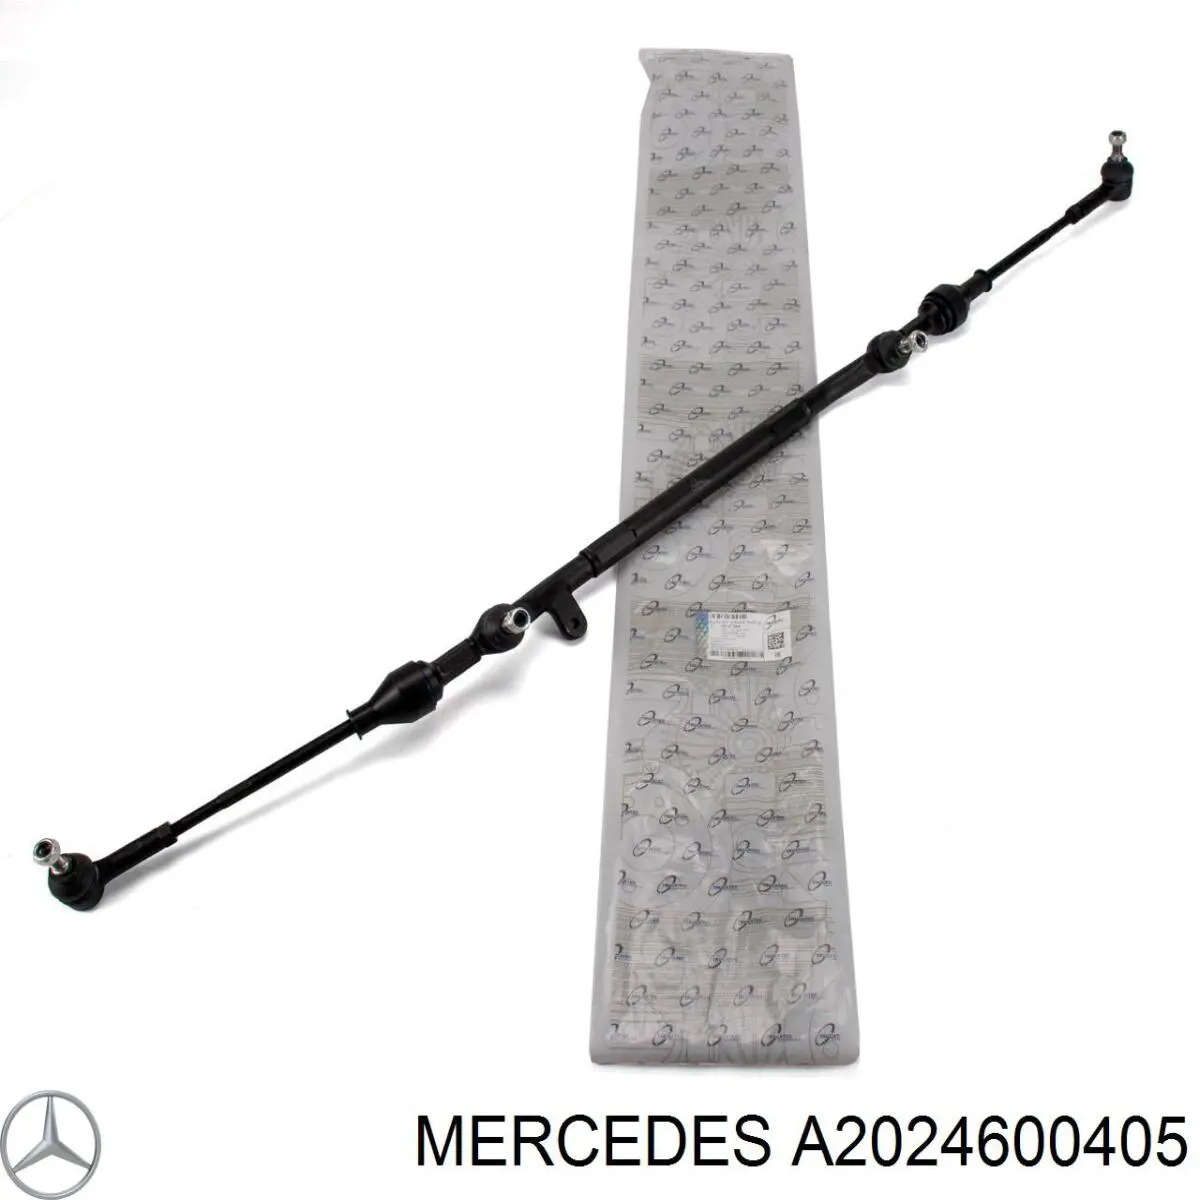 A2024600405 Mercedes trapézio de direção montado